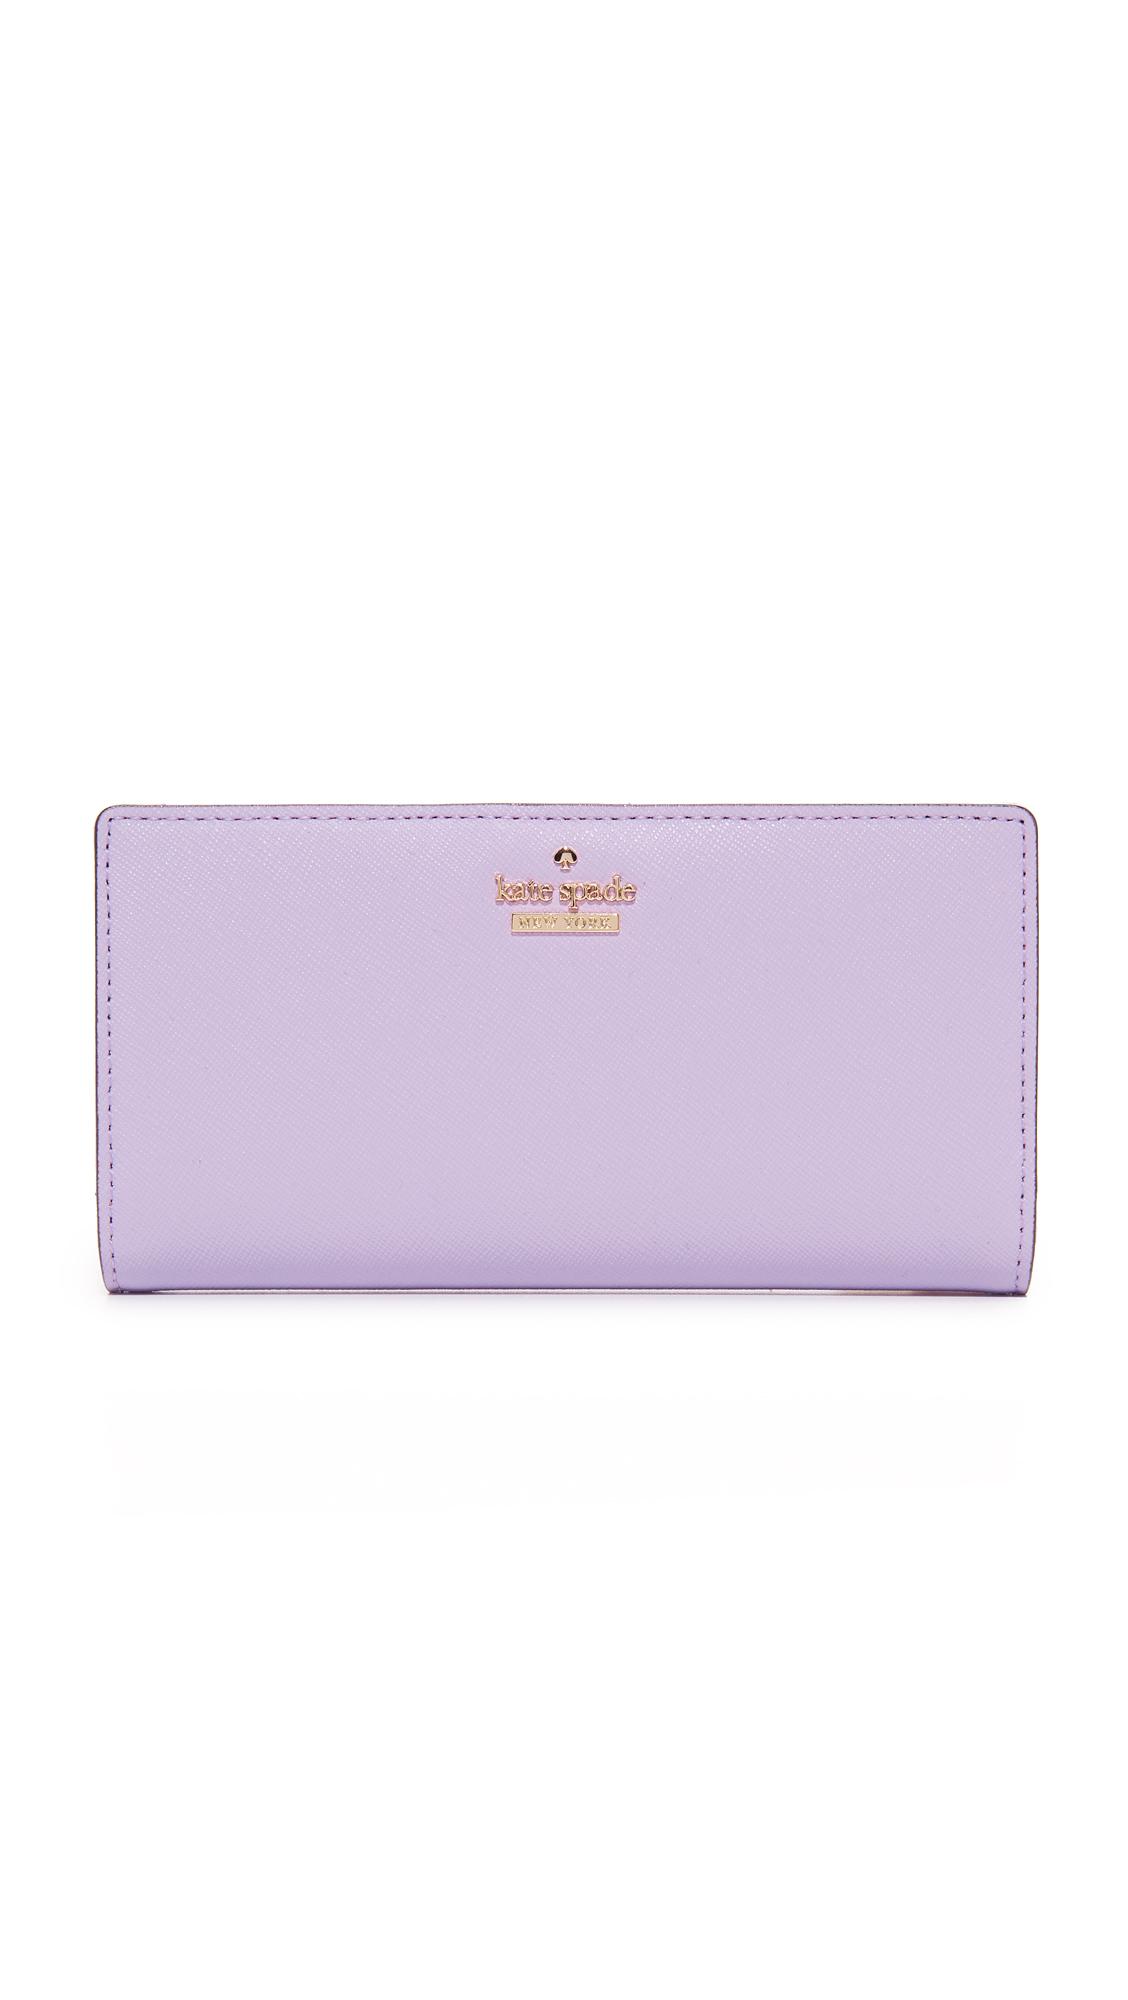 Kate Spade Wallet in Purple